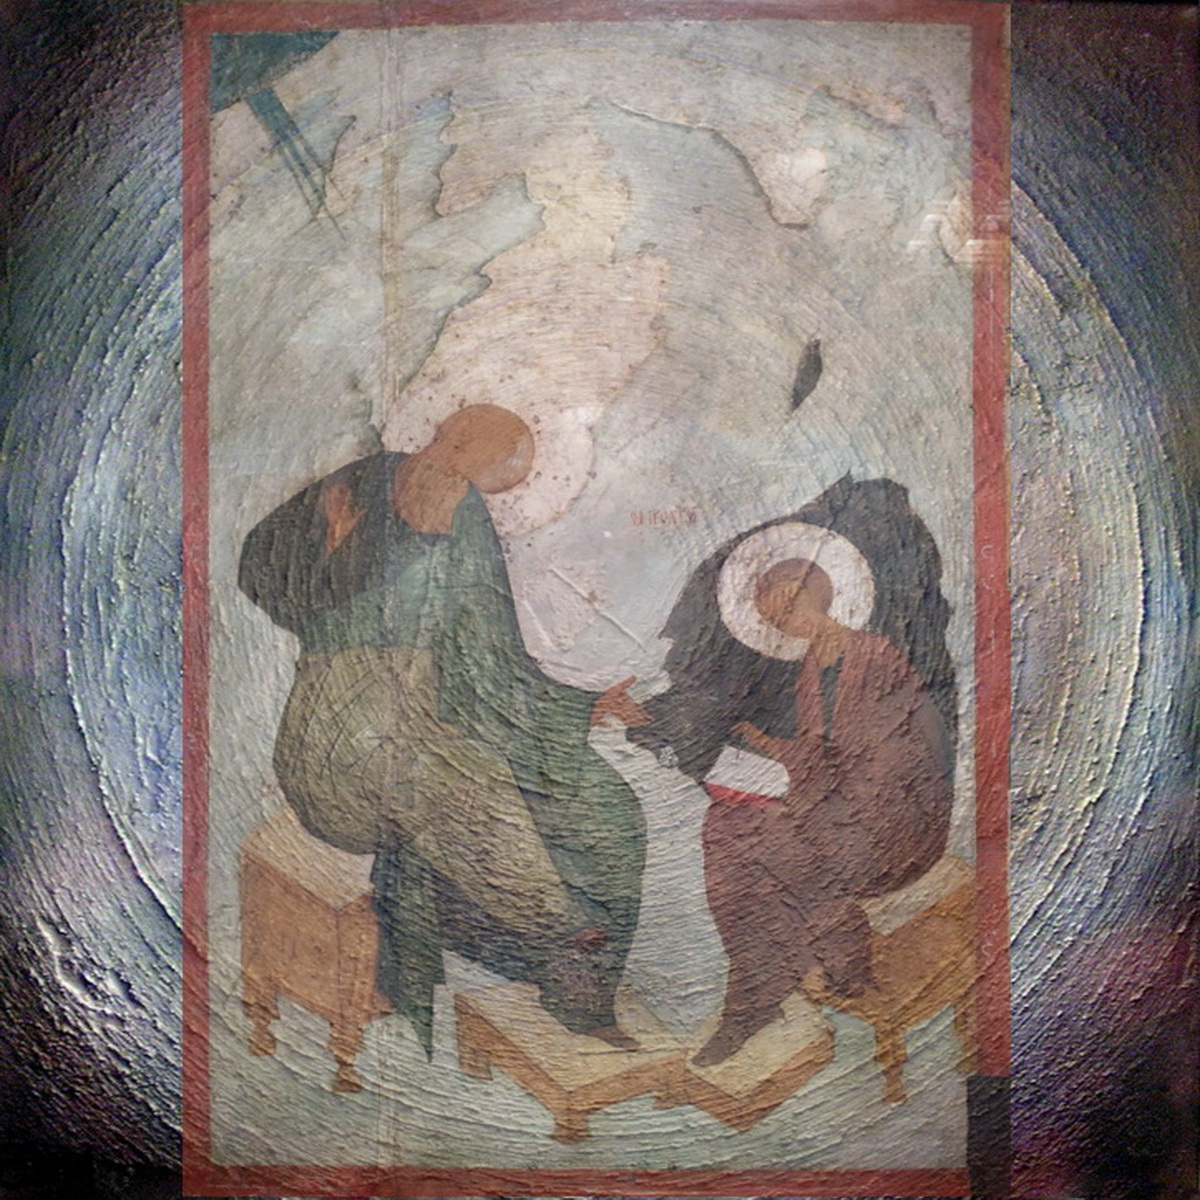 St. Evangelist John by Pathmos. Fragment. FromTretjakov Art Gallery. Moscow & the Winter